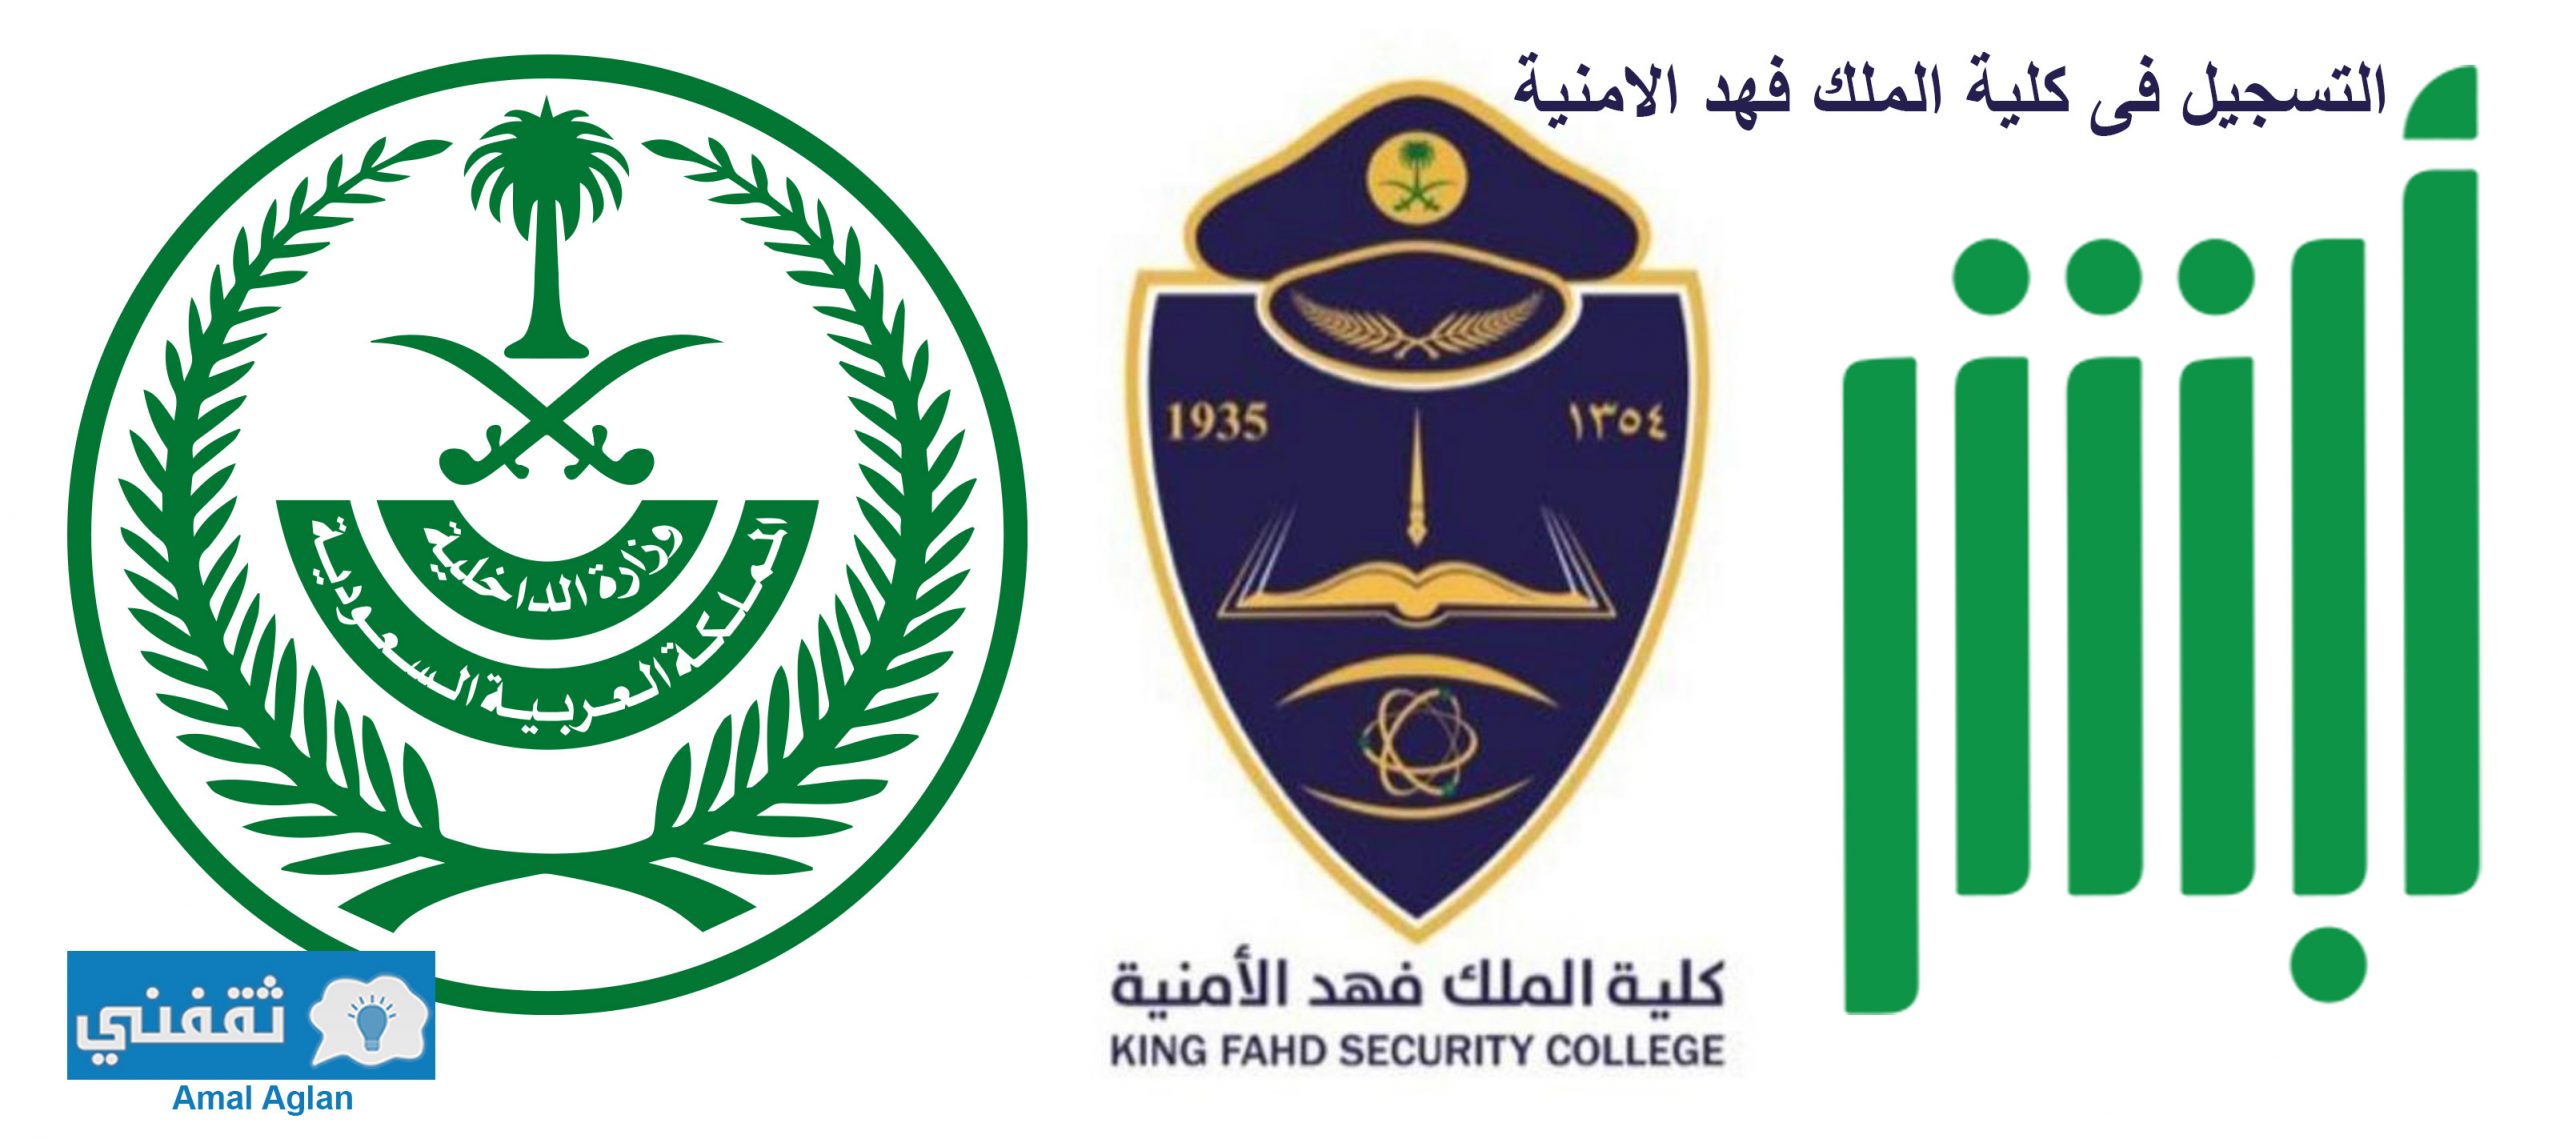 التسجيل في كلية الملك فهد الأمنية لخريجي الثانوية العامة